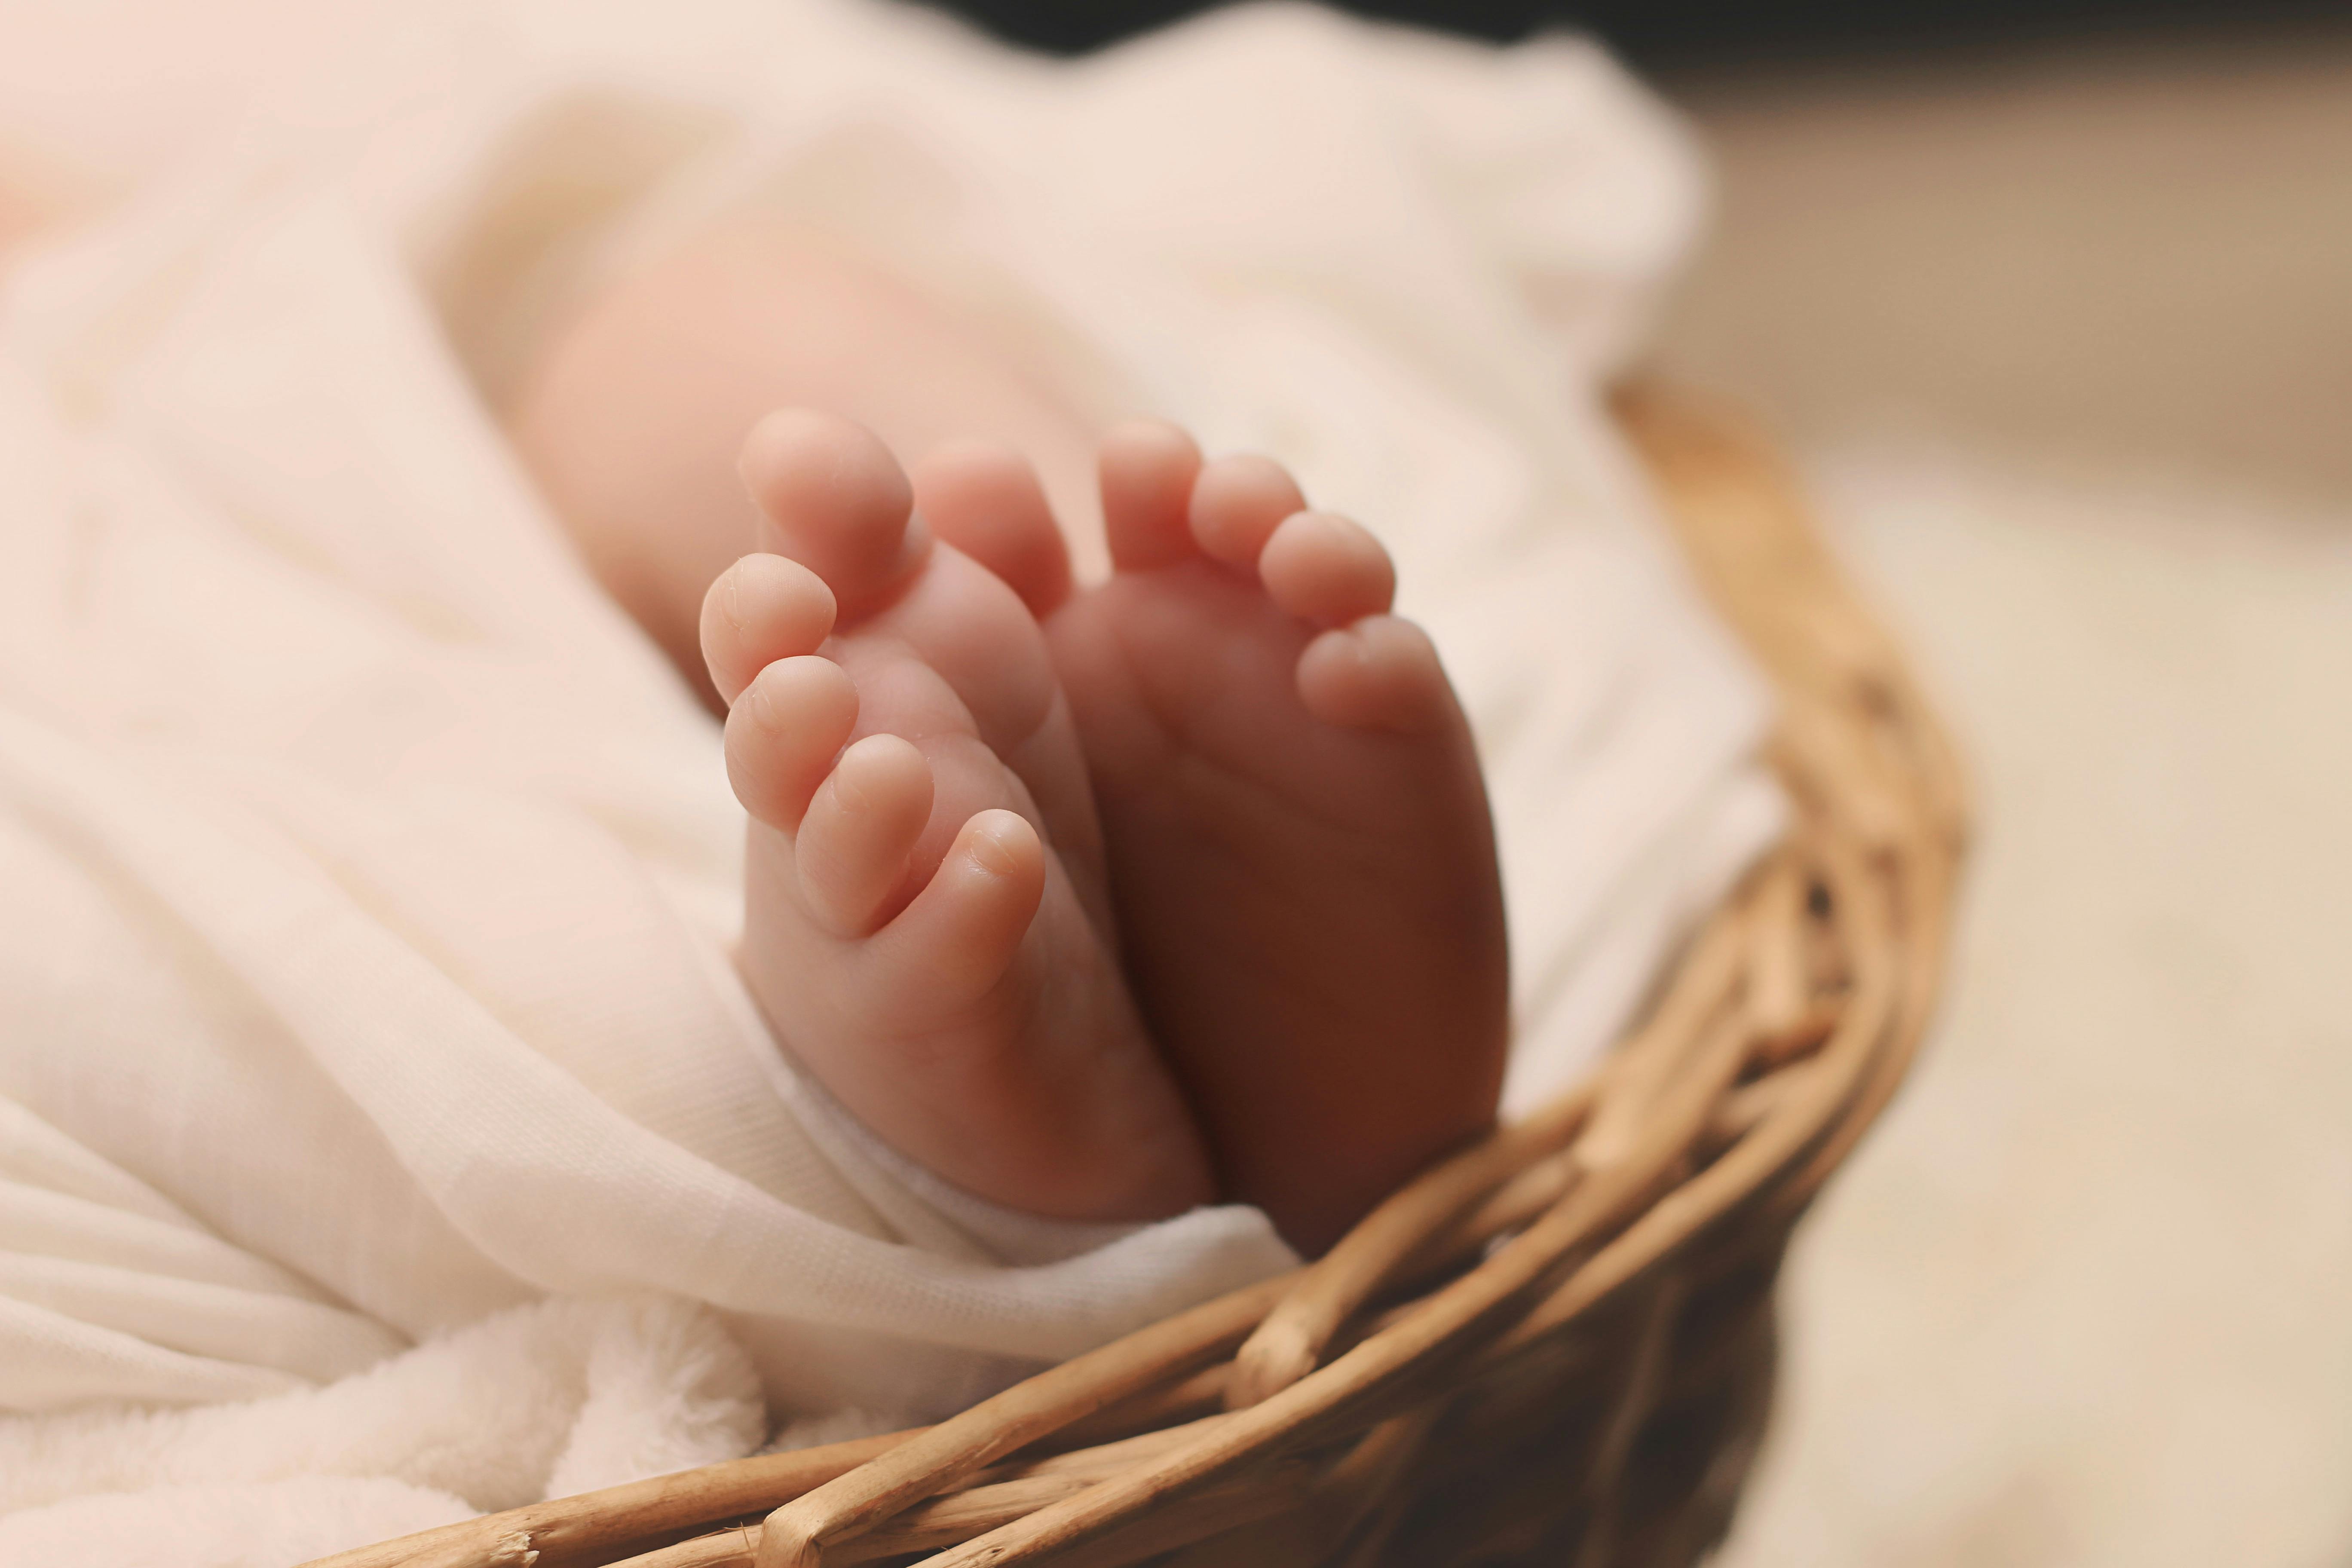 https://images.pexels.com/photos/161534/newborn-baby-feet-basket-161534.jpeg?cs=srgb&dl=pexels-pixabay-161534.jpg&fm=jpg